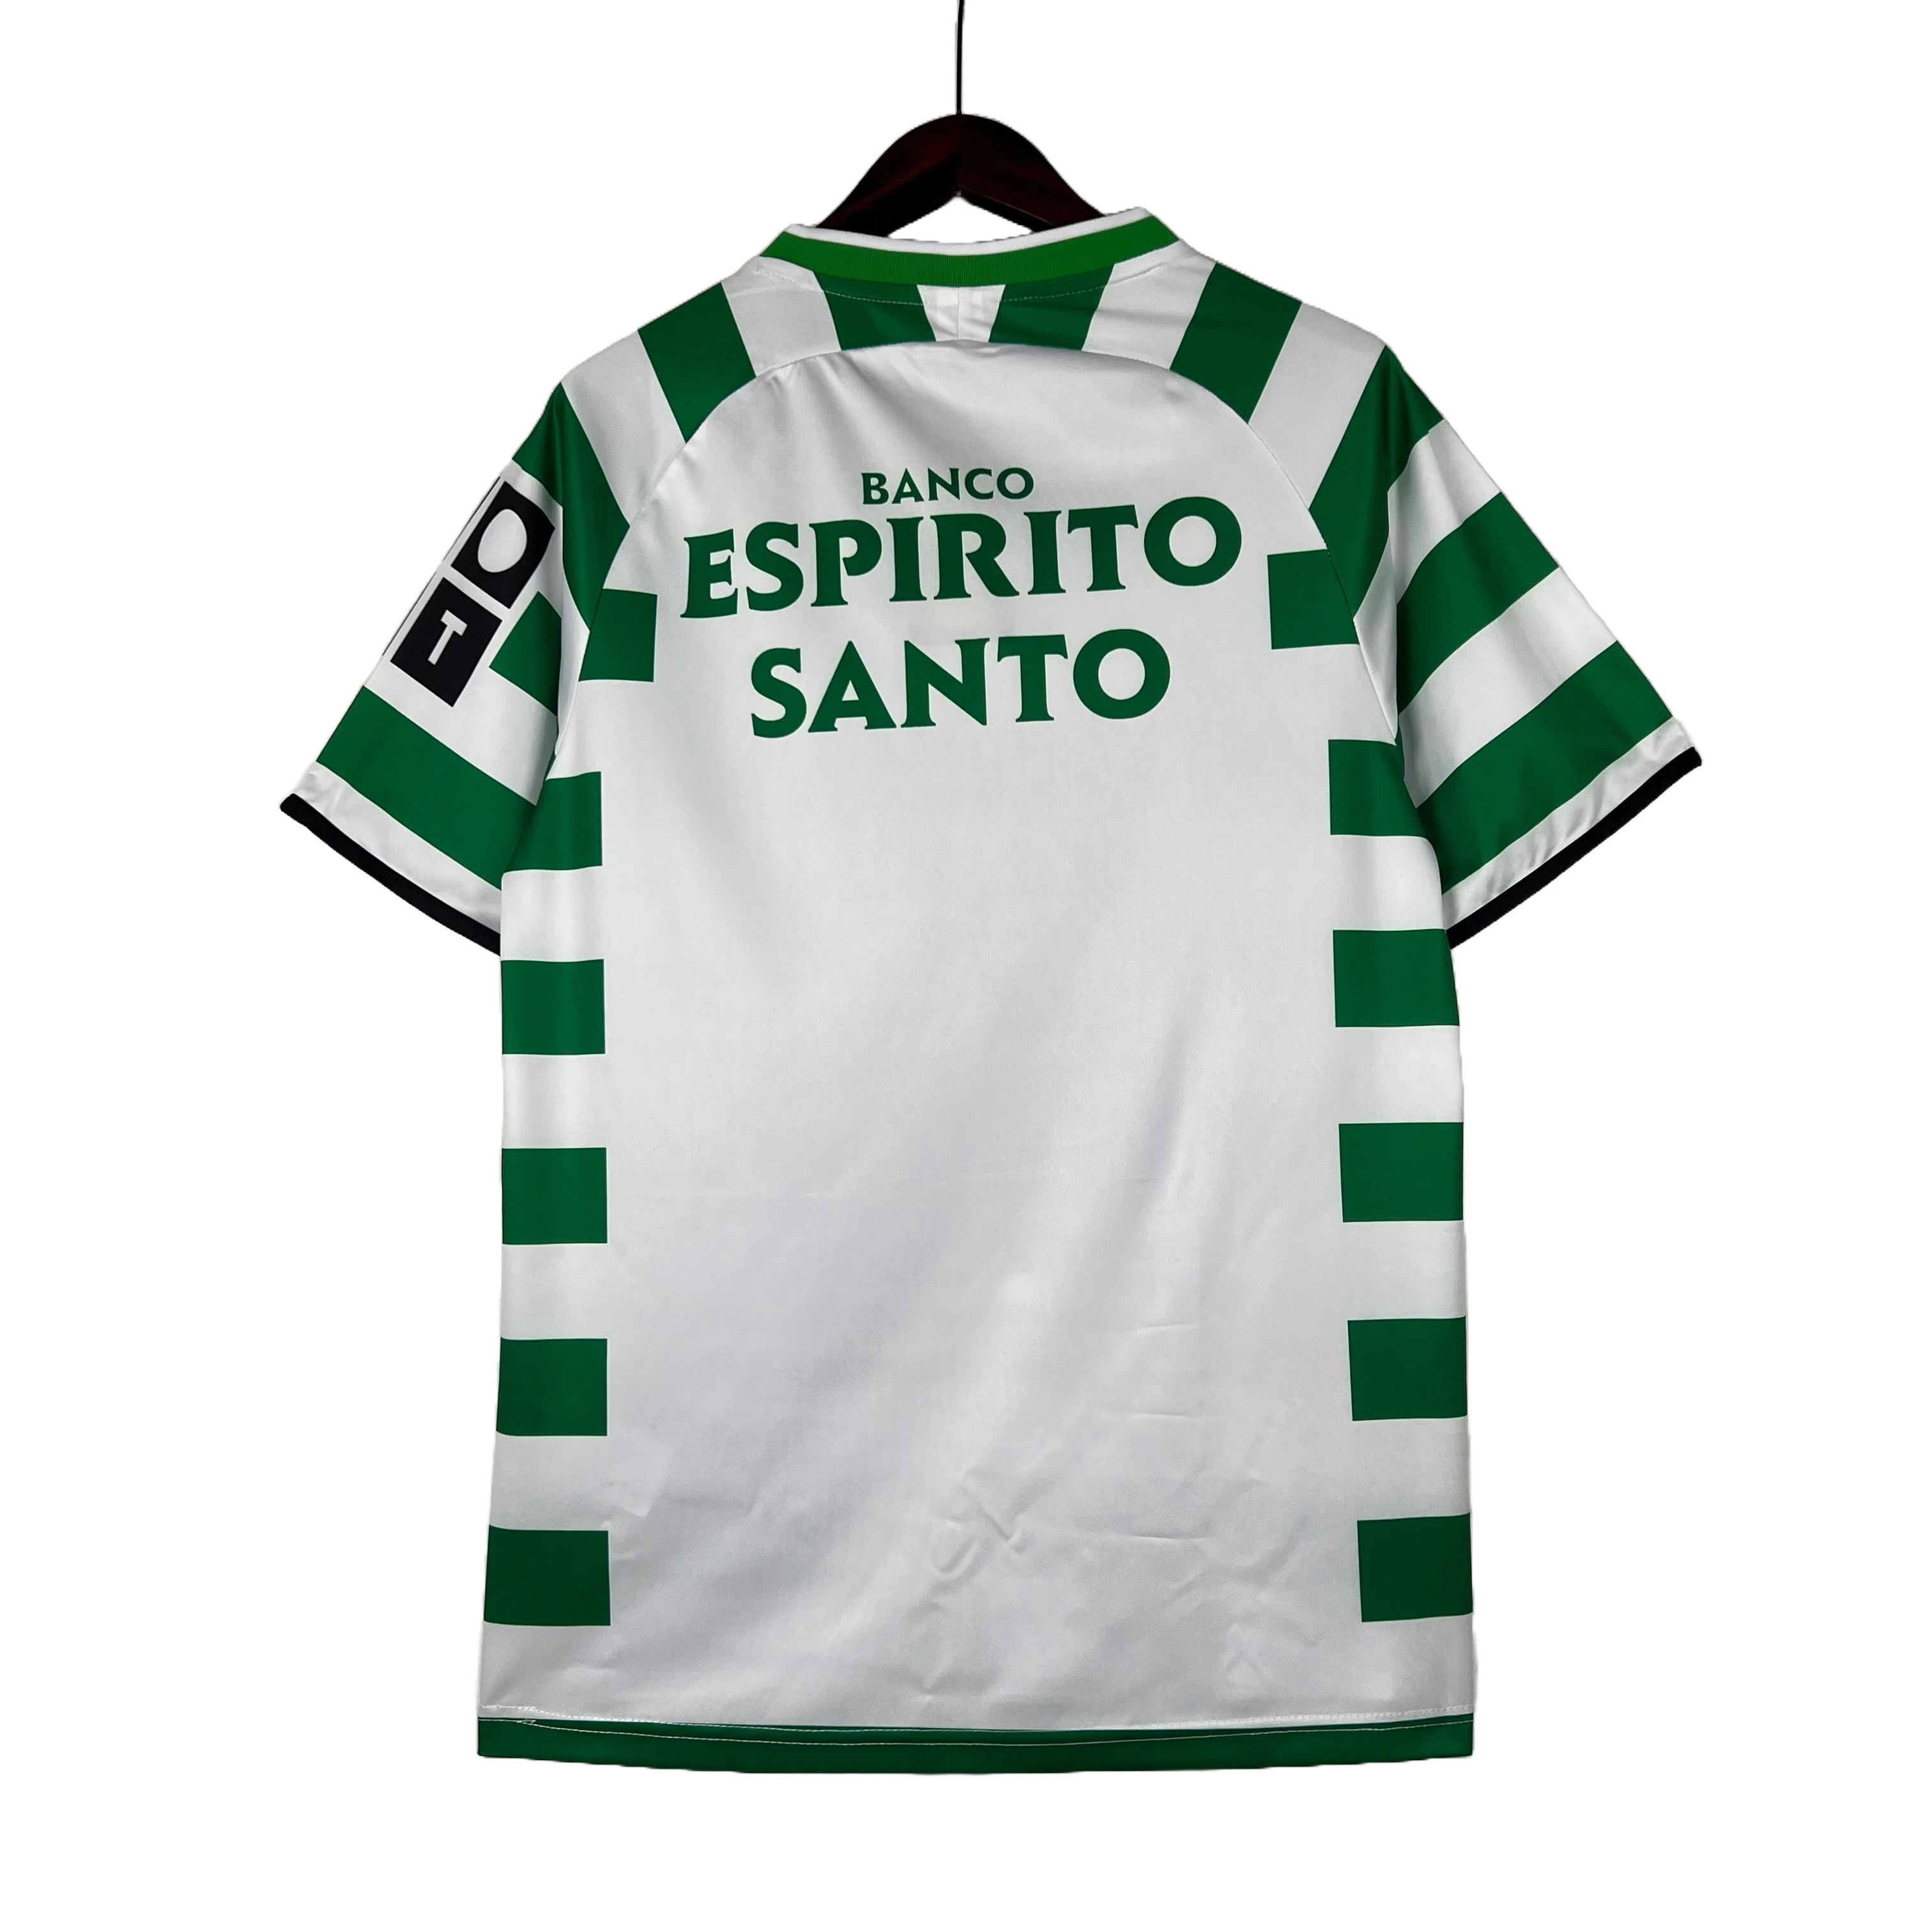 Sporting Lisbona - 03/04 Vintage